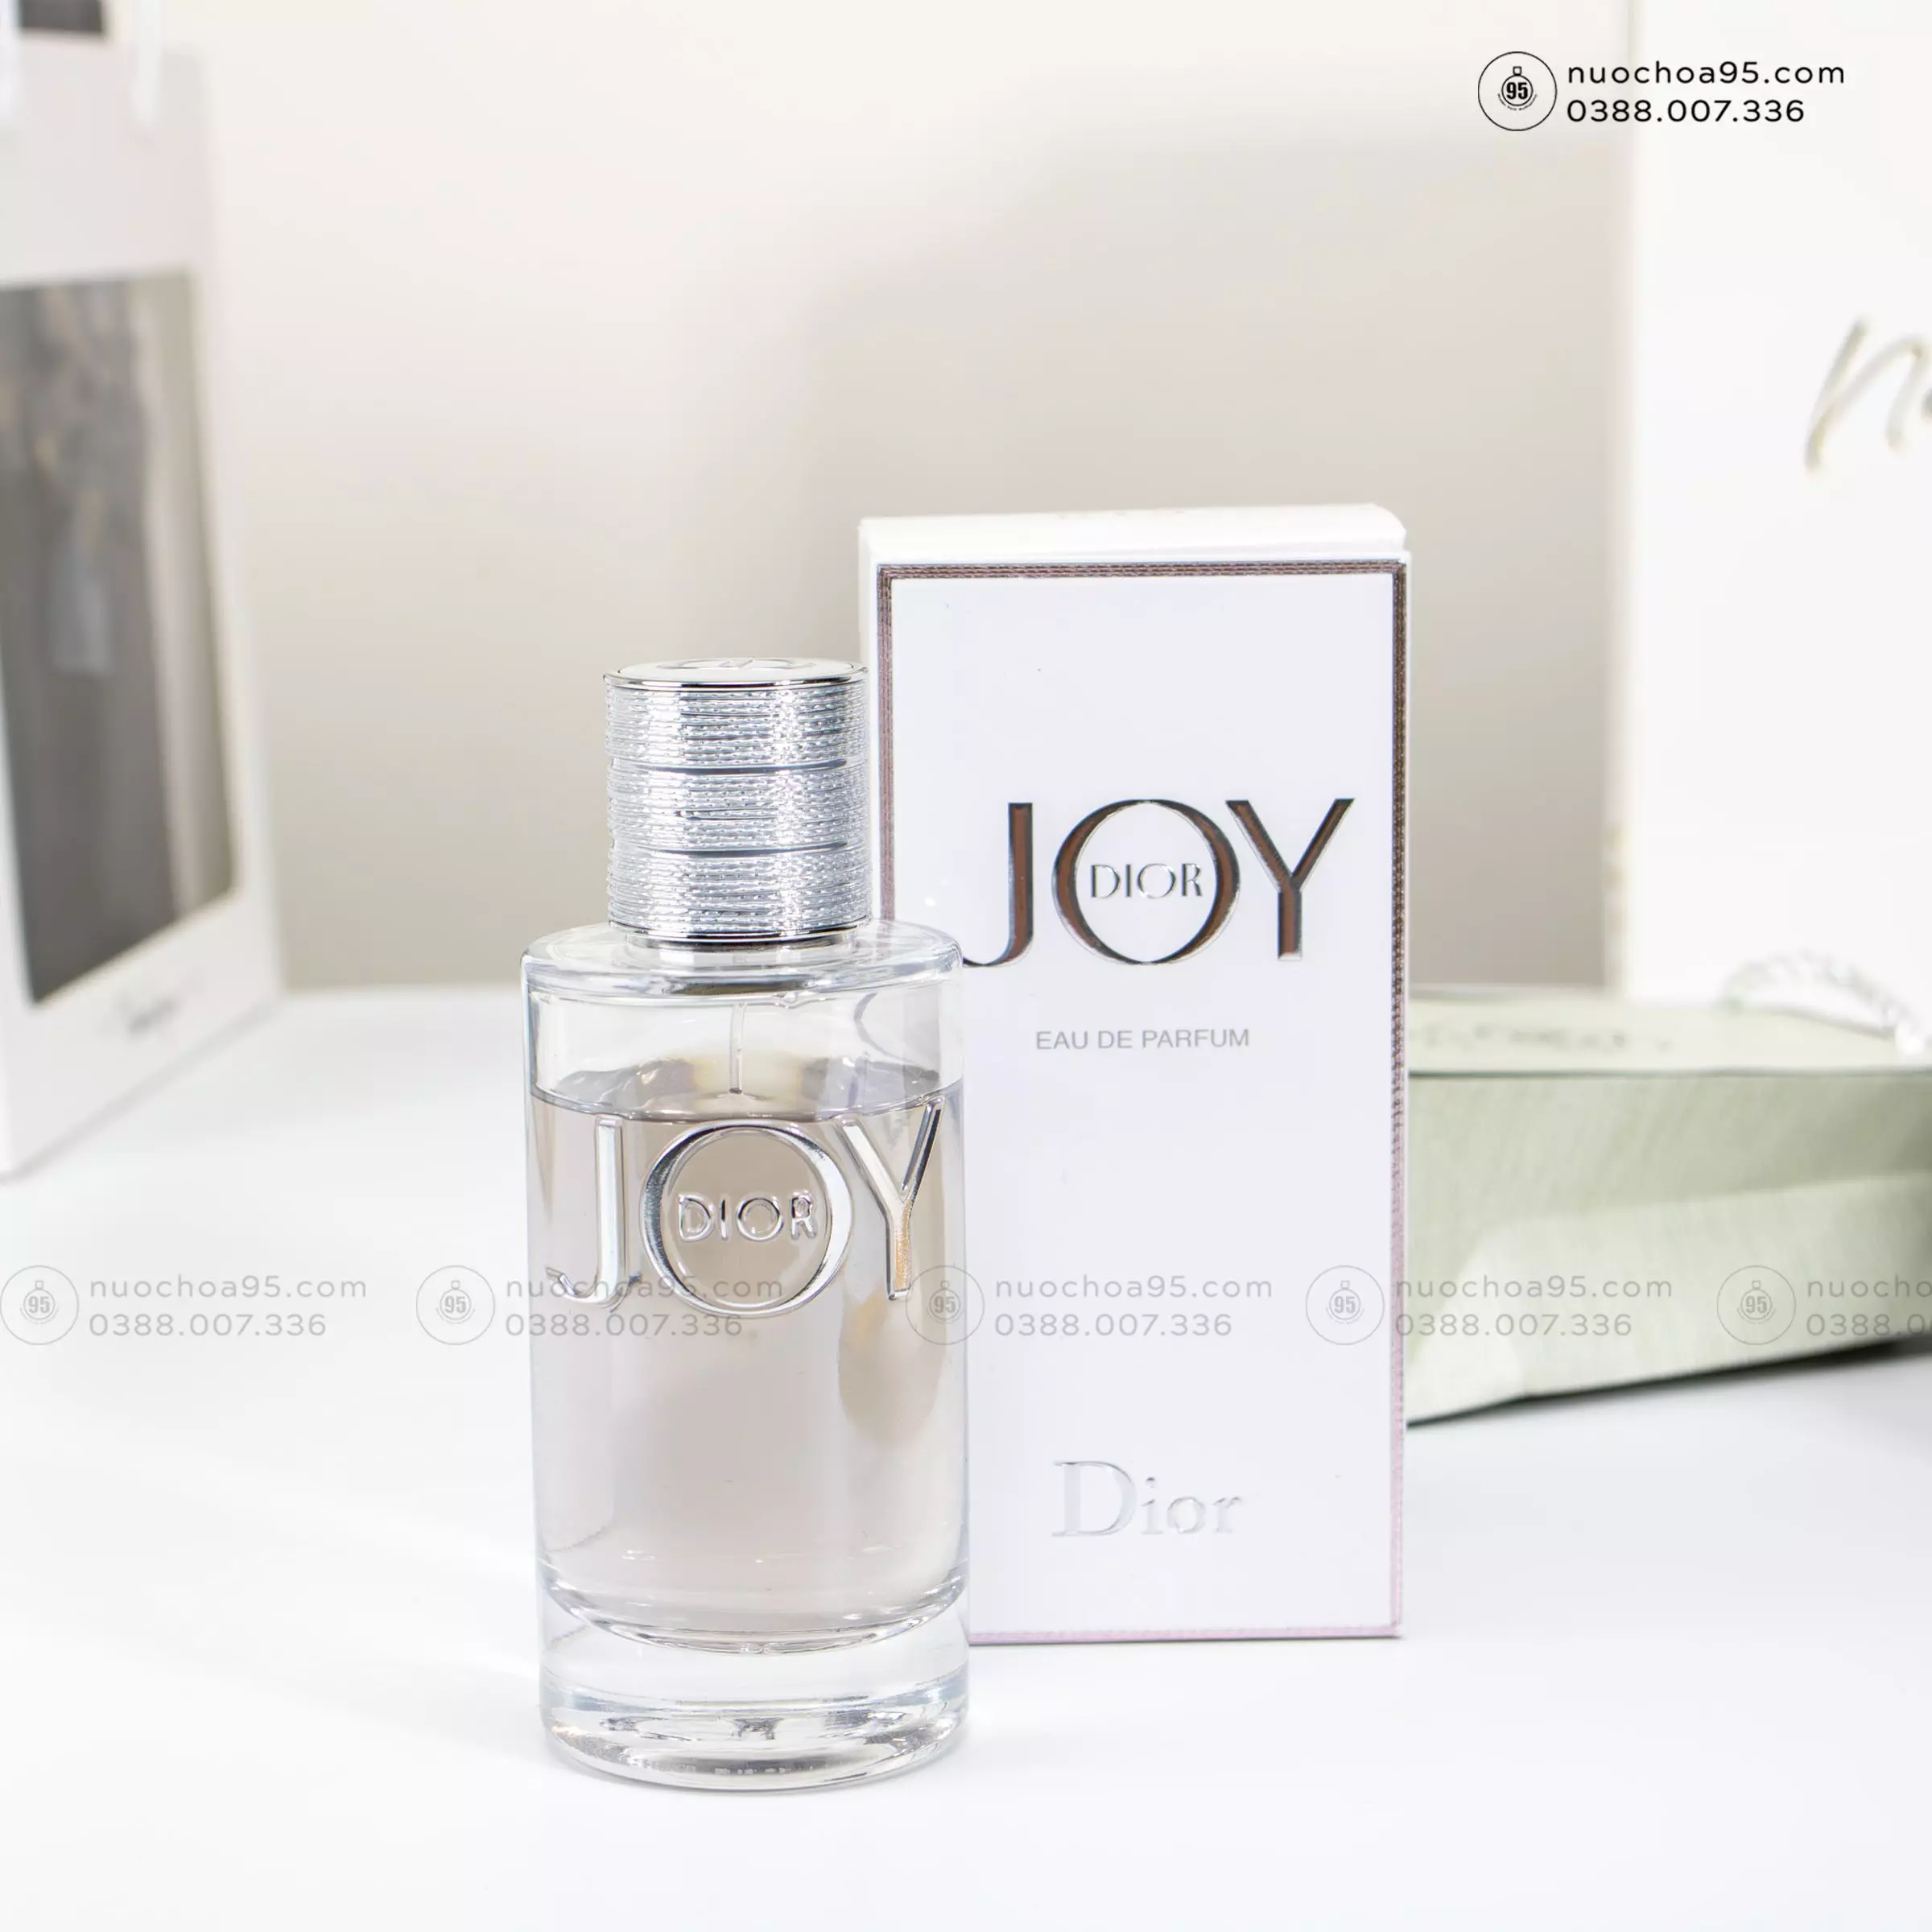 Nước hoa Joy by Dior - Ảnh 3